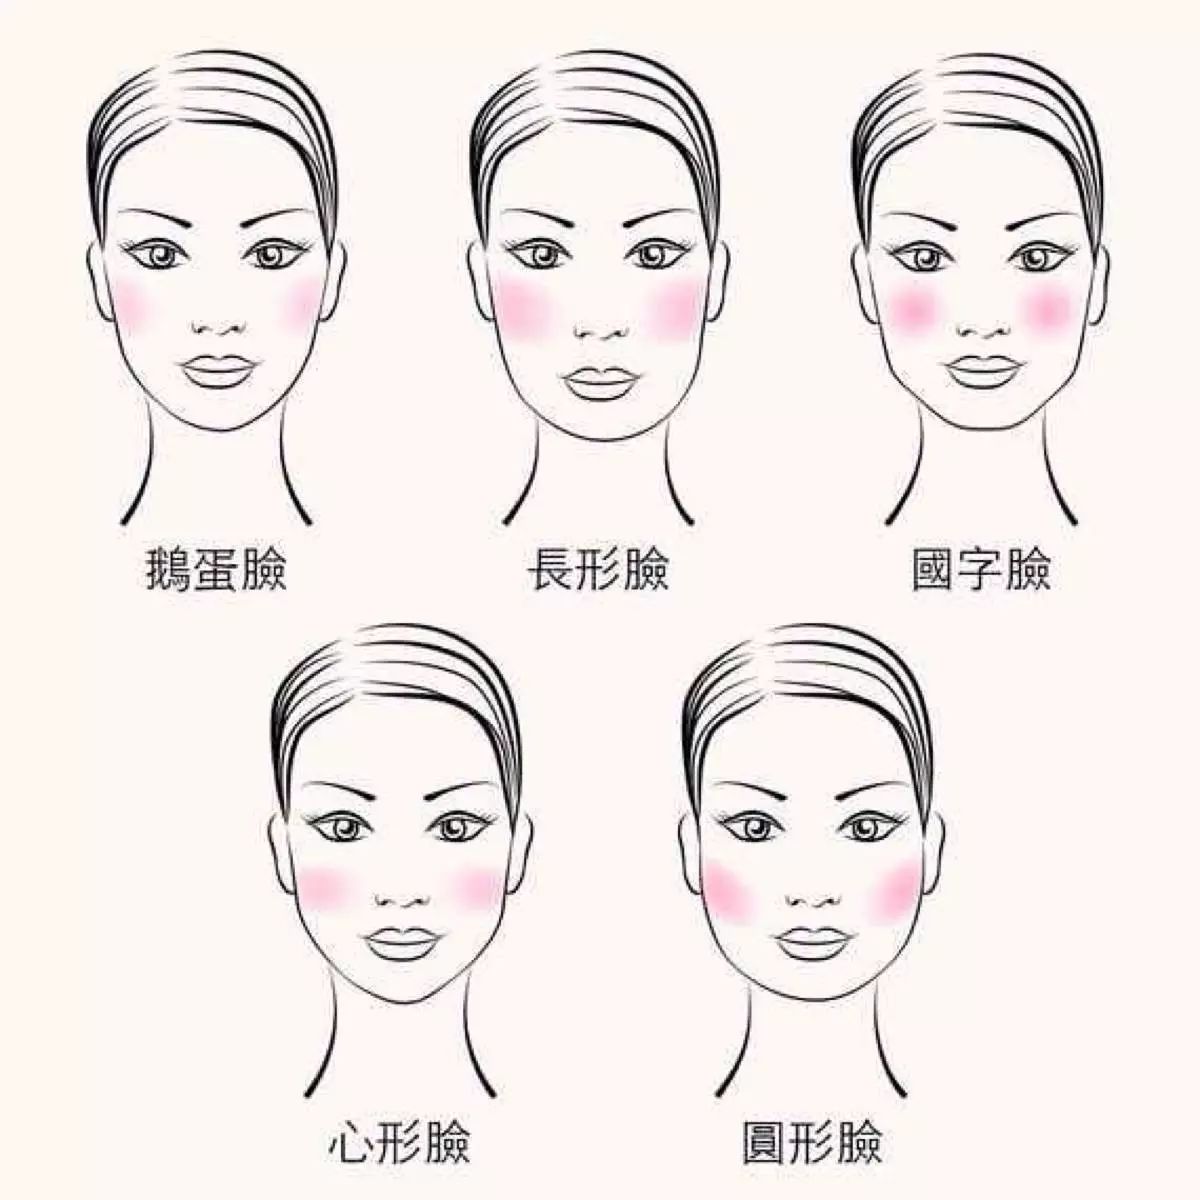 2.长脸型:应从脸颊部位开始至耳朵方向横向扫. 4.